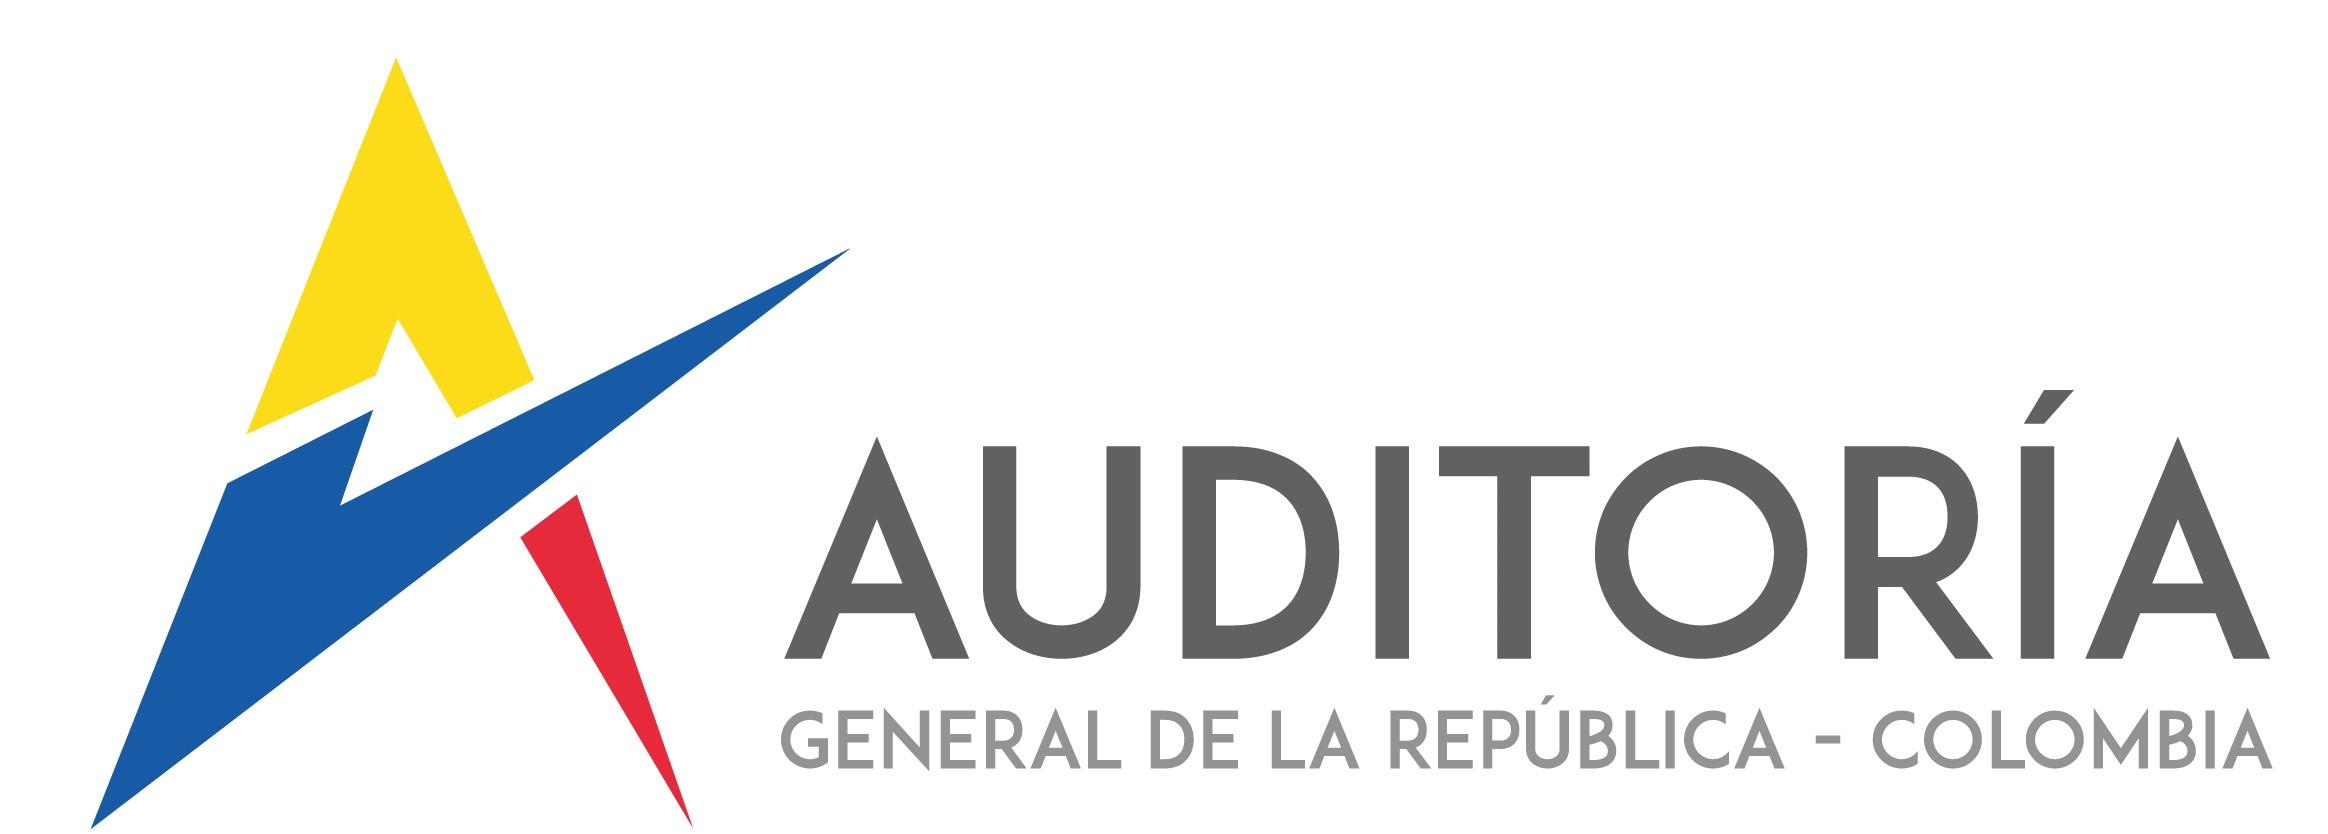 Auditoria General de la República